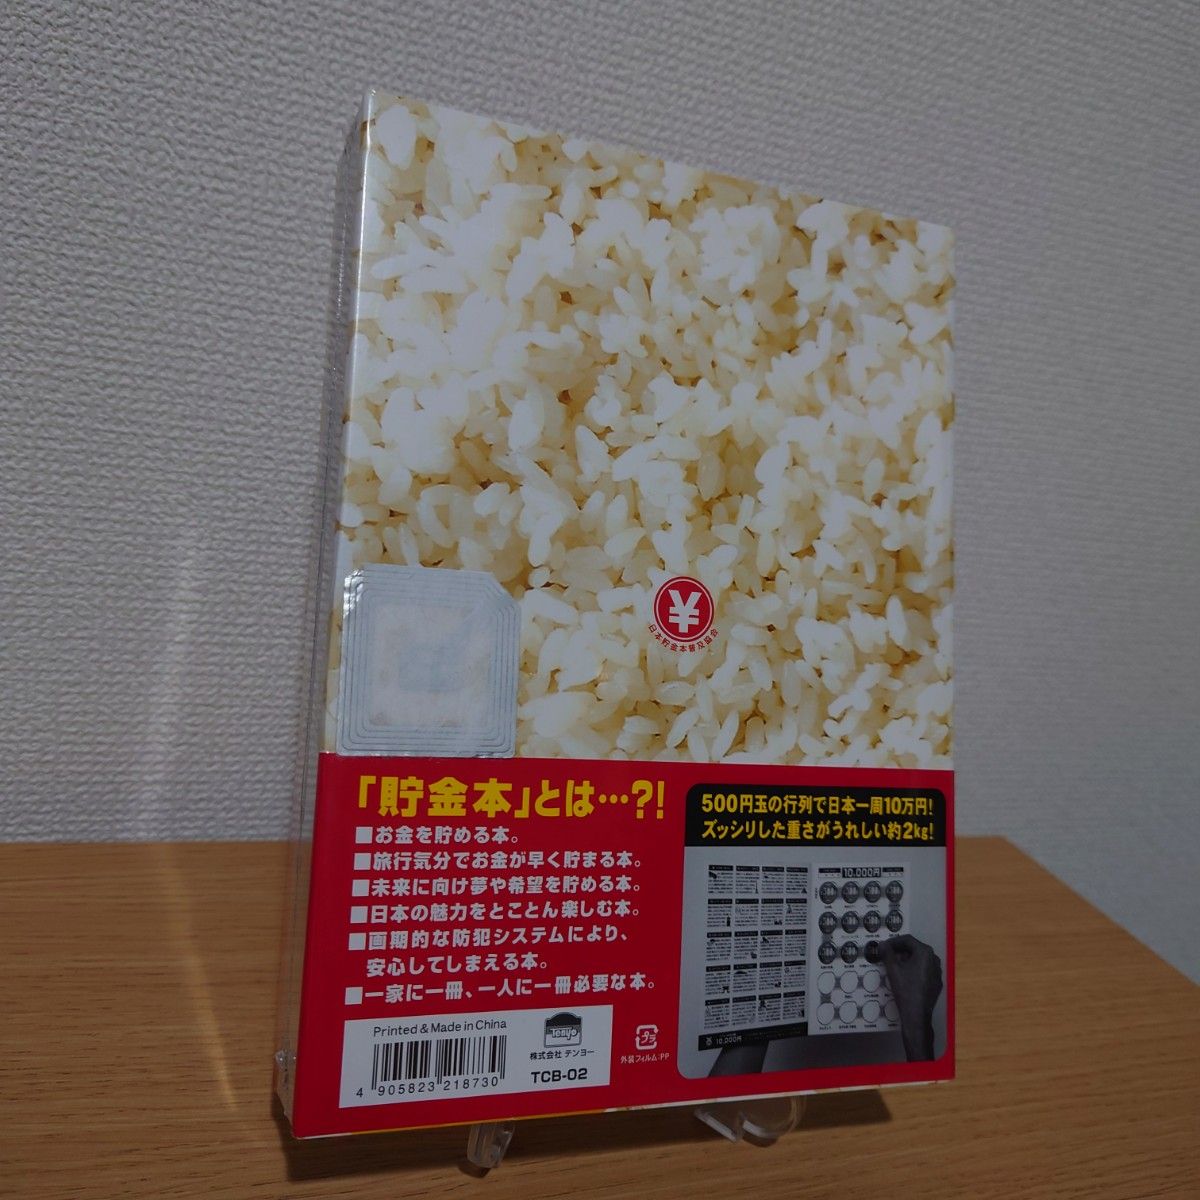 10万円貯まる本 「日本一周版」